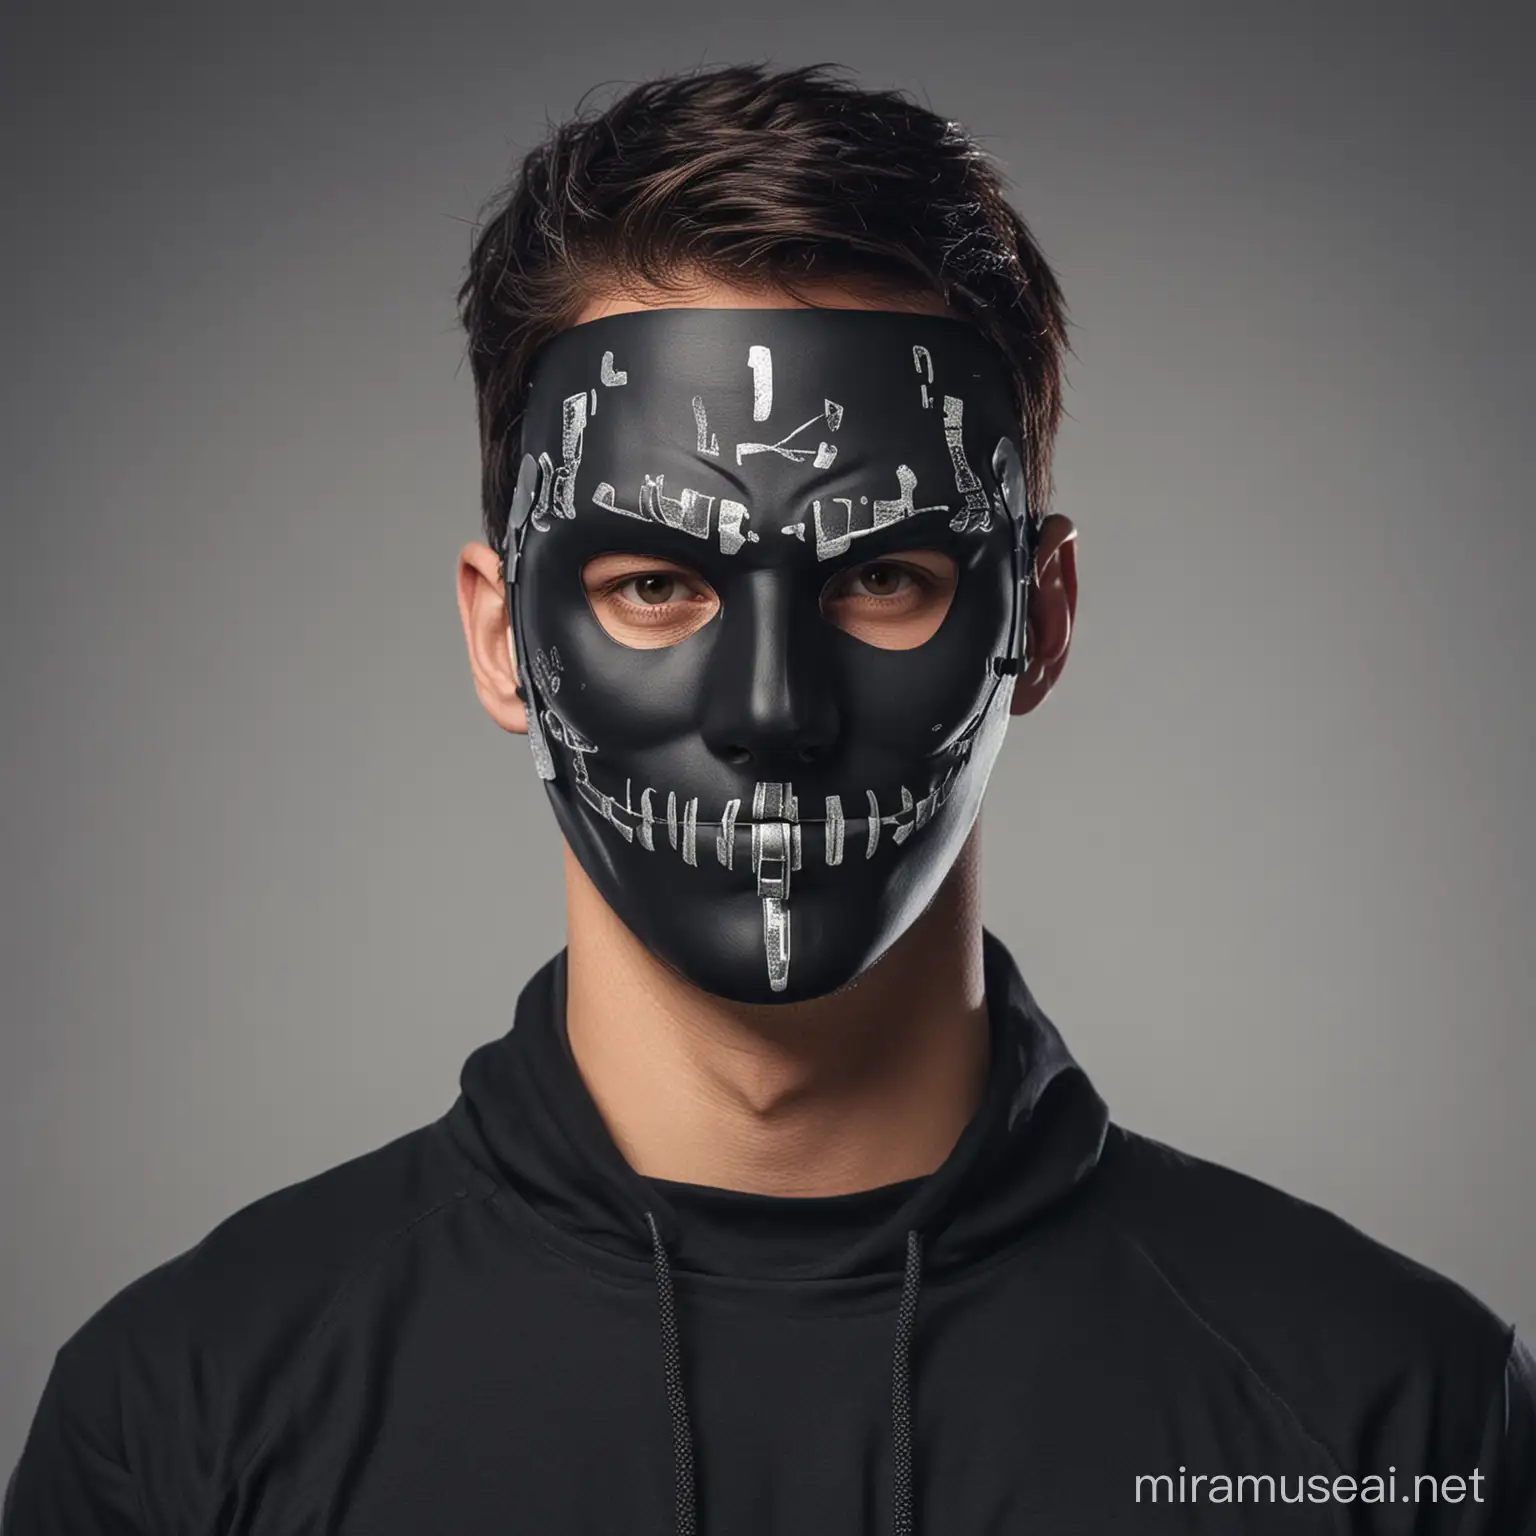 A man wearing a hacker mask